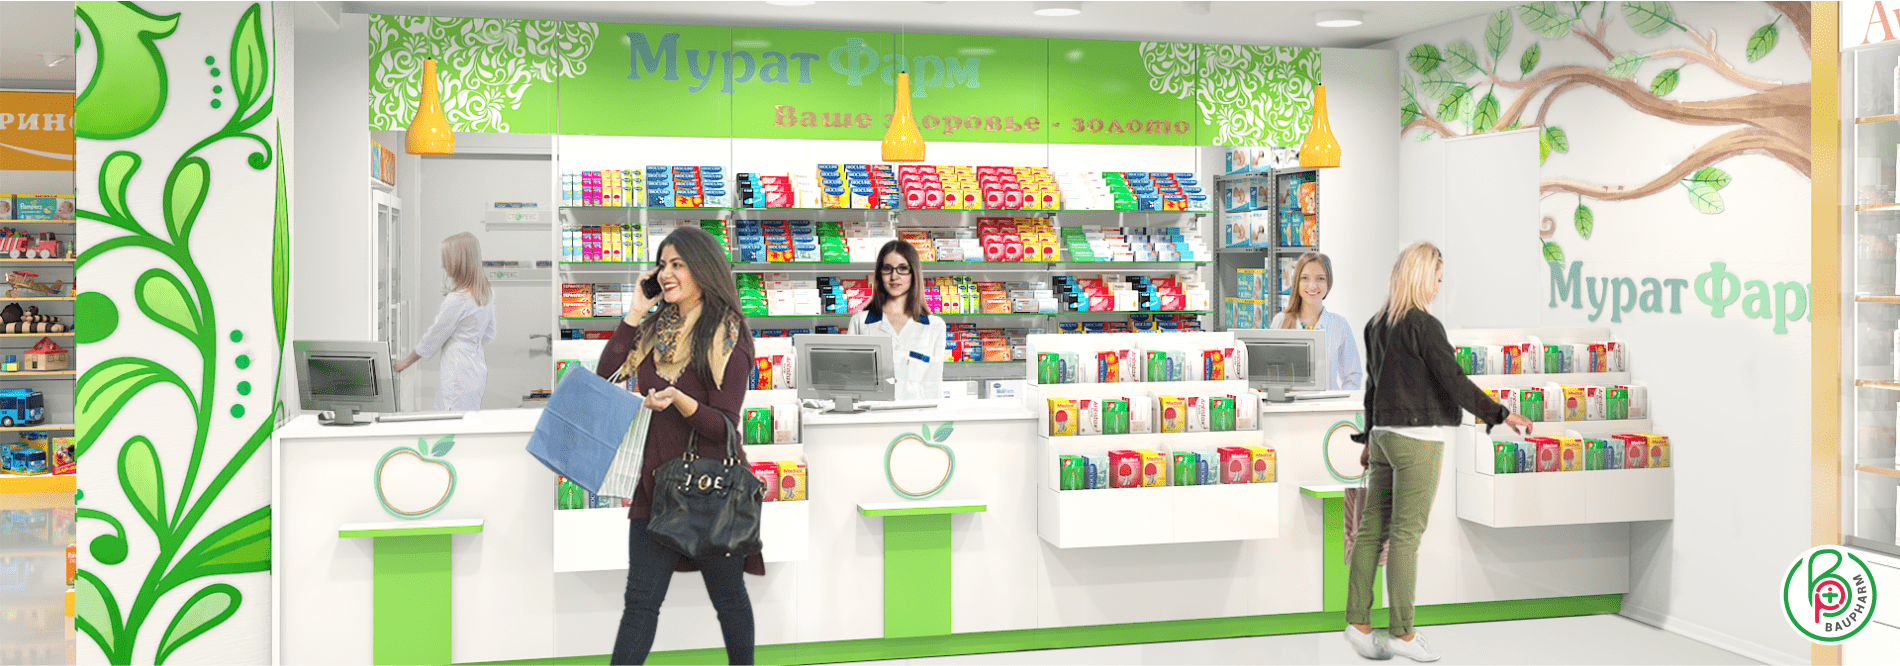 Аптечный супермаркет 300 м² Модернизация аптеки - полная смена формата работы